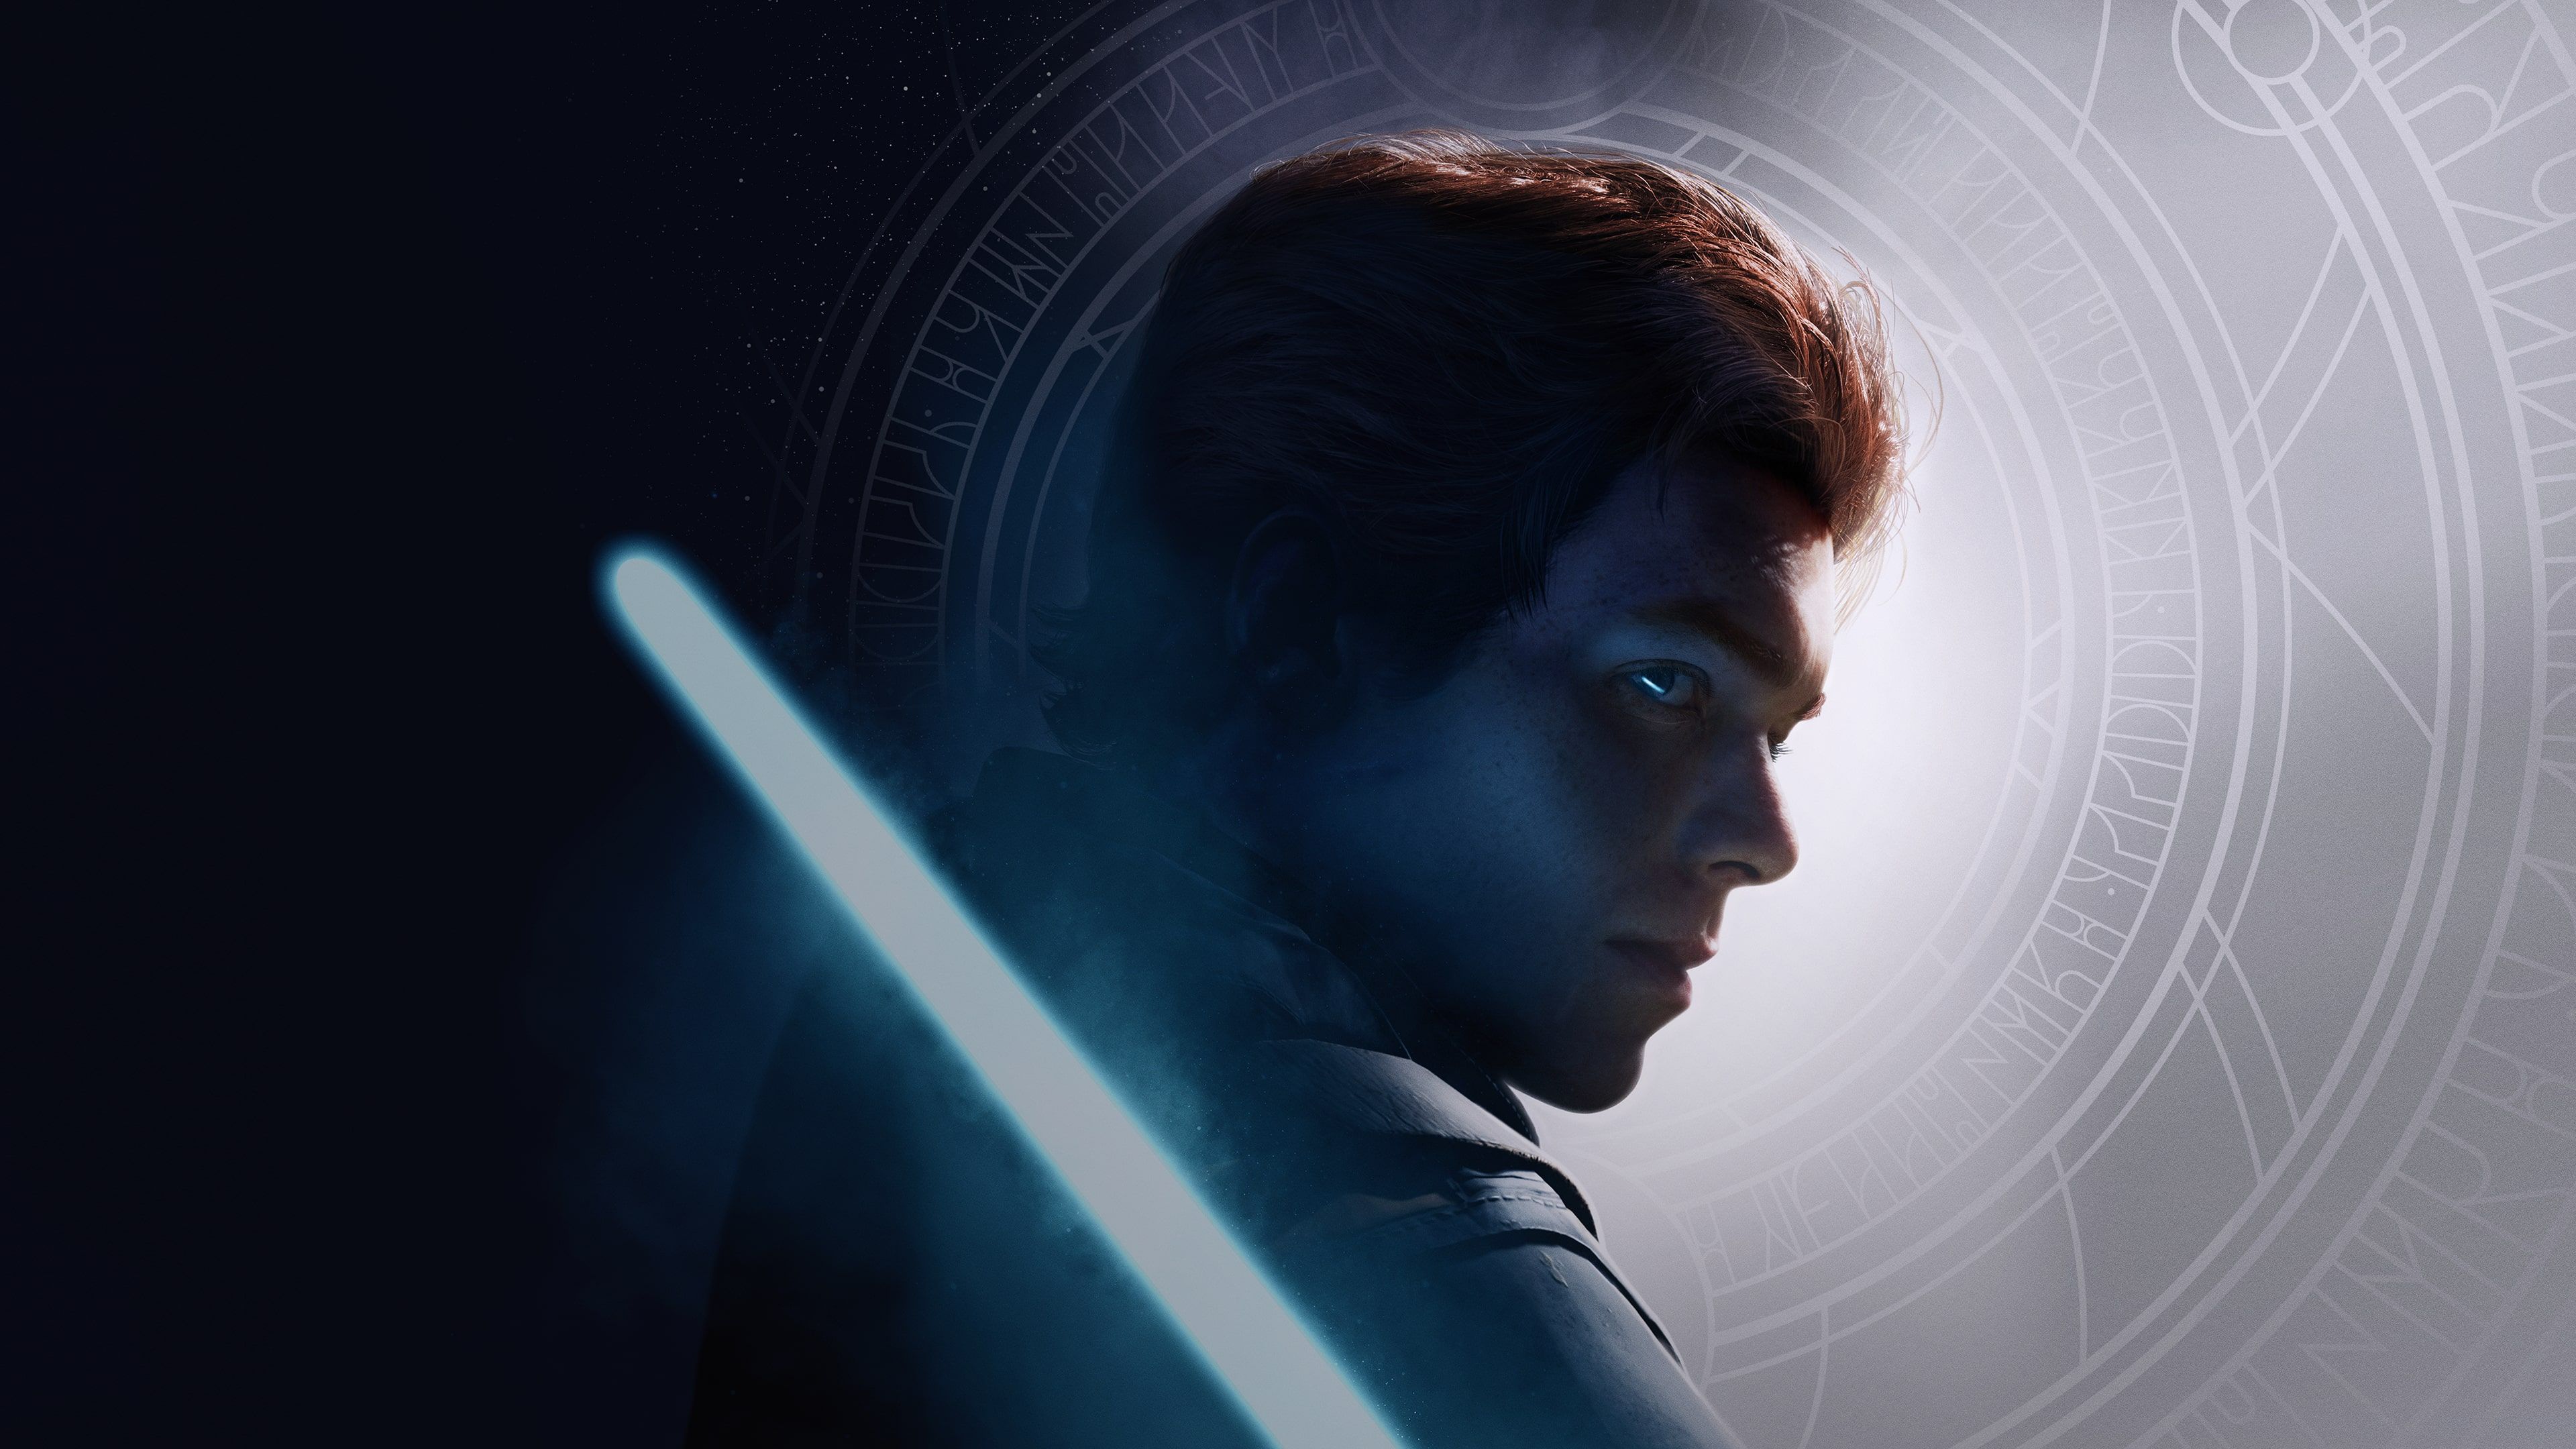 STAR WARS Jedi: Fallen Order cover image